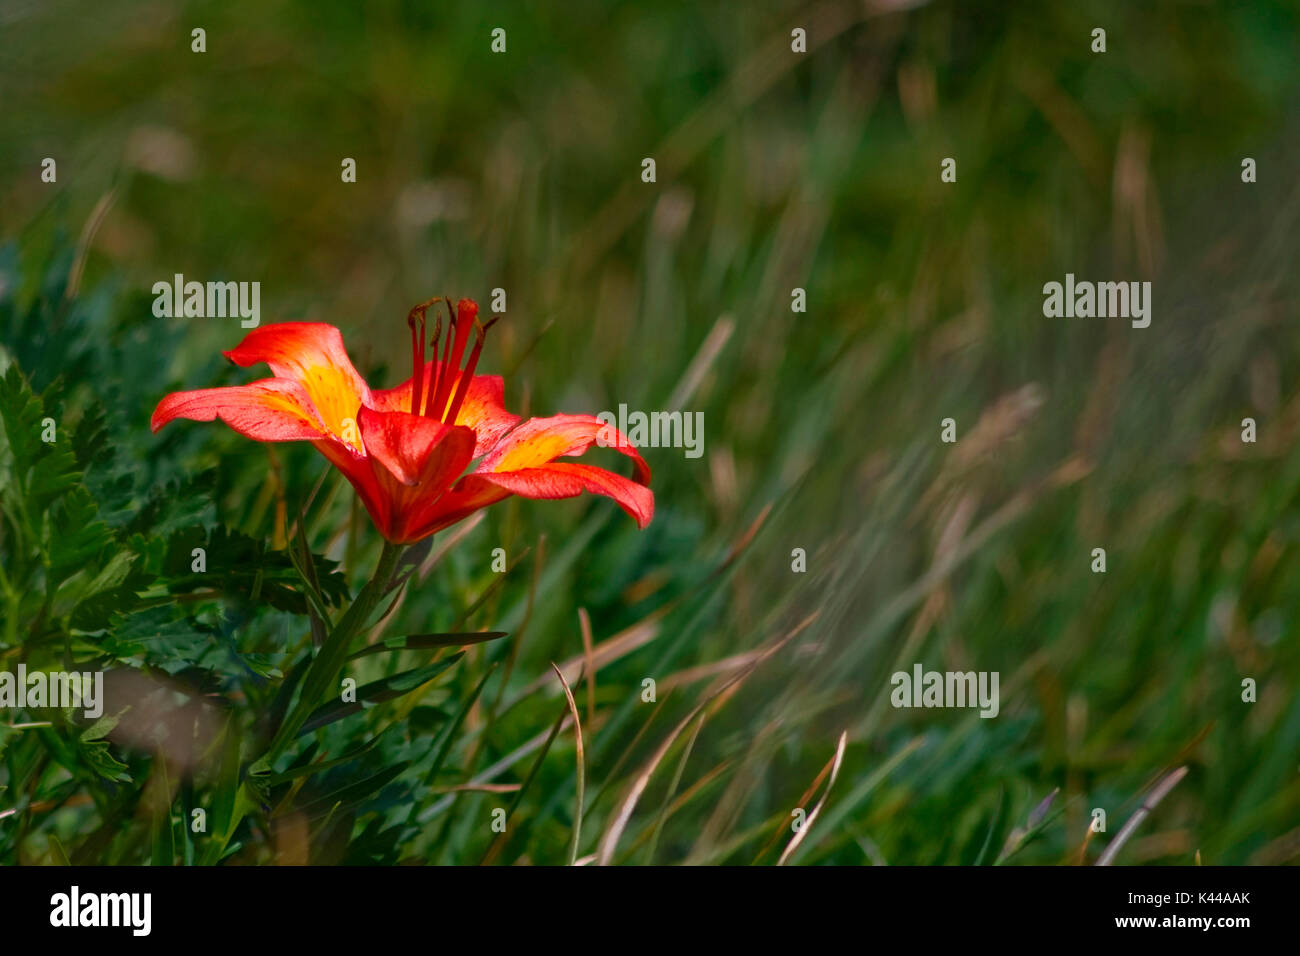 Giglio rosso (Lilium bulbiferum) viene anche chiamato il giglio di San Giovanni in quanto fiorisce a fine giugno. Cesce wild sui pendii erbosi delle montagne e sunny italiano; esso si trova a radure, sul bordo dei boschi e dei pascoli subalpini da 500 a 1800 m. Foto Stock